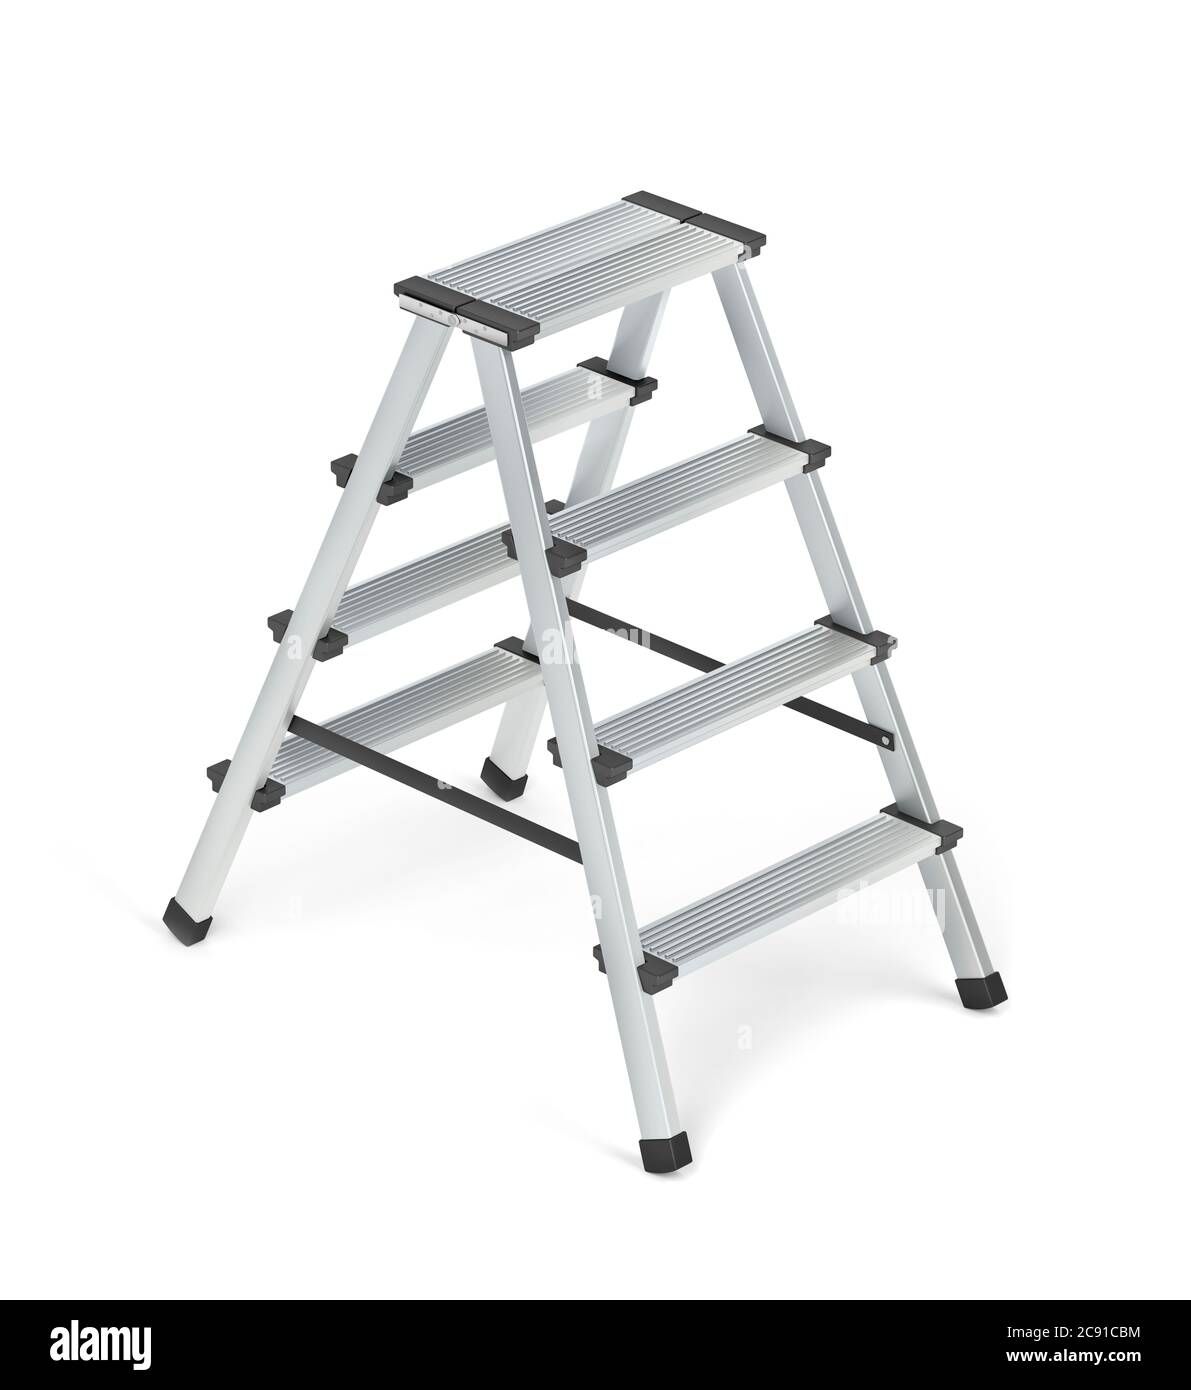 Aluminum ladder on white background Stock Photo